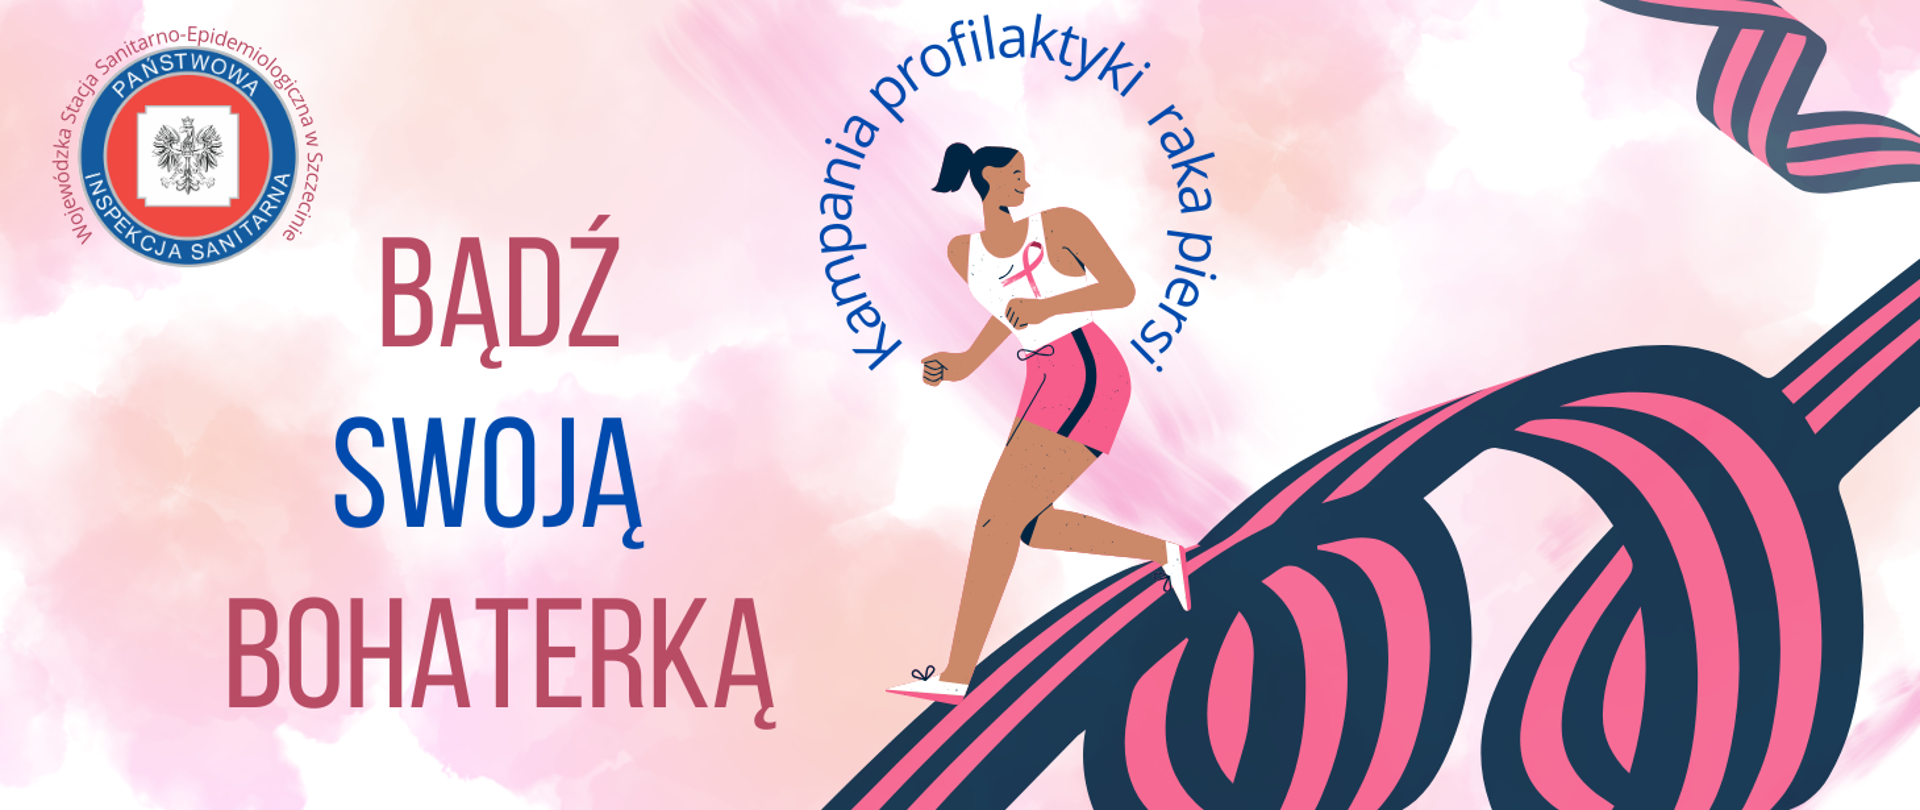 Grafika w różowej kolorystyce przedstawia postać biegnącej kobiety w sportowym stroju, hasło Bądź swoją bohaterką Kampania profilaktyki
raka piersi Wojewódzka Stacja Sanitarno-Epidemiologiczna w Szczecinie i logo Państwowej Inspekcji Sanitarnej.
